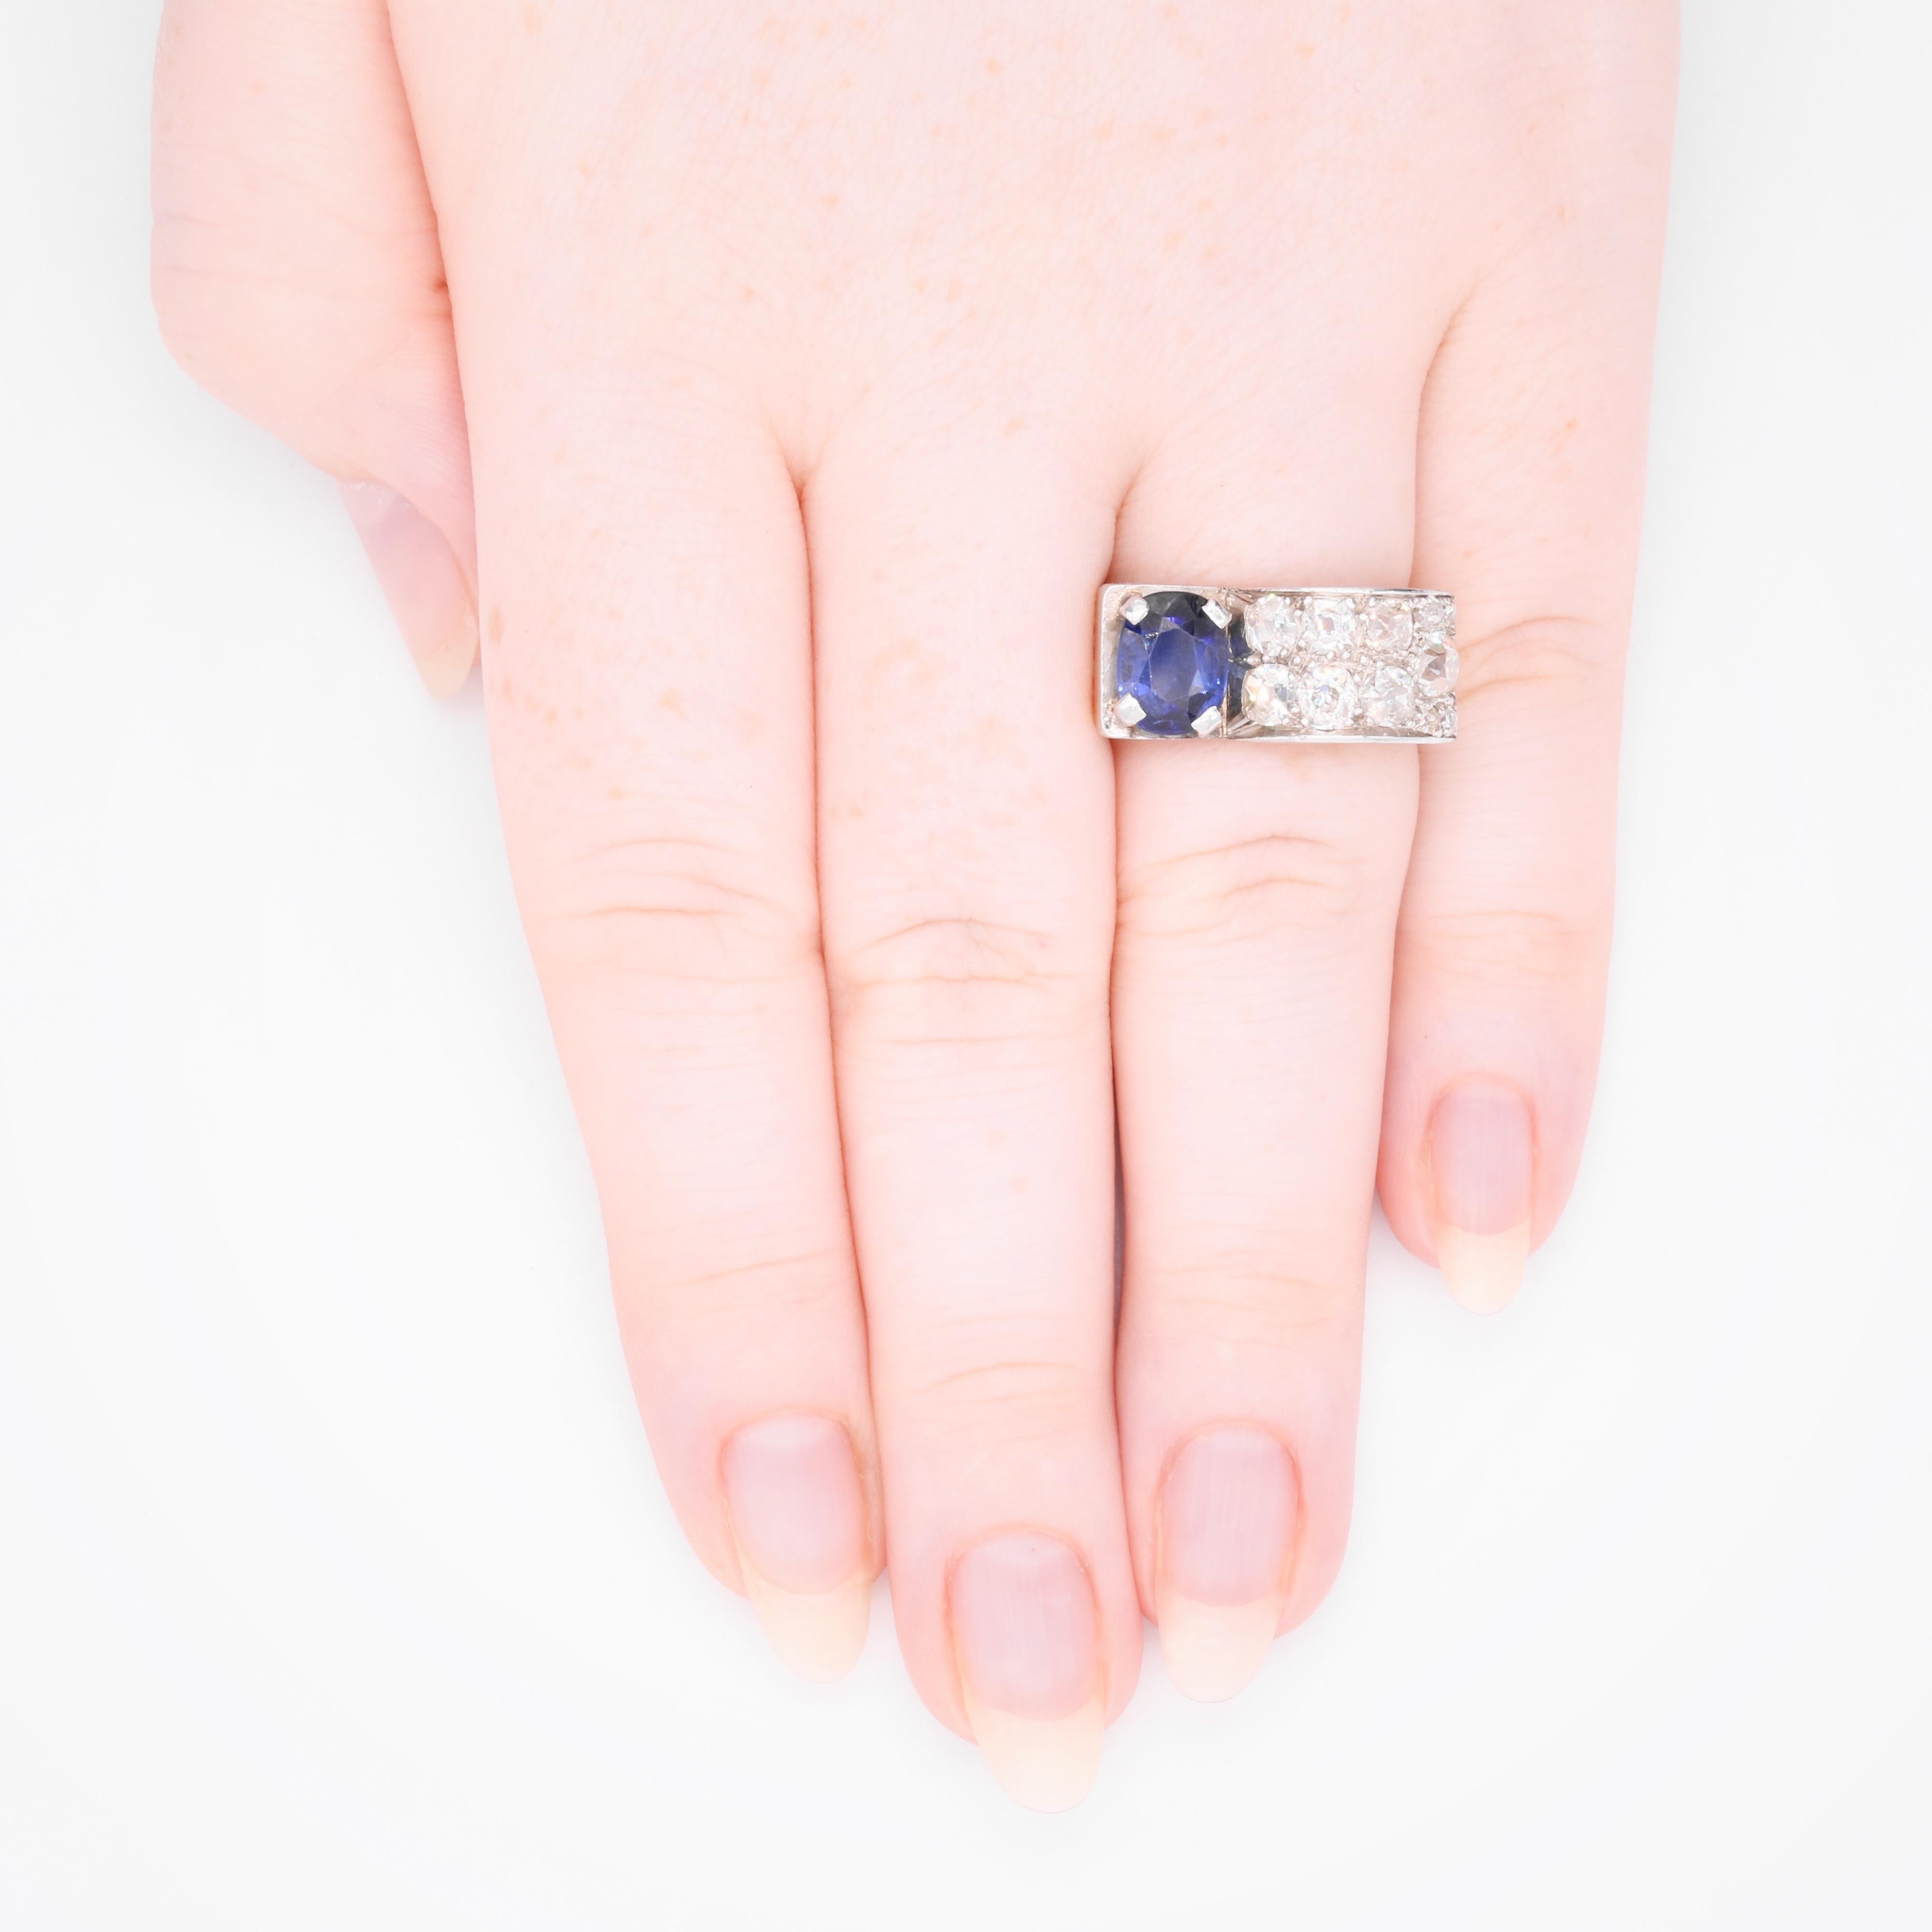 Ein Art-Deco-Ring aus Saphiren, Diamanten, Platin und Gelbgold, bestehend aus einem blauen Saphir im Ovalschliff und elf Diamanten im Minen- und Peruzzi-Schliff, gefasst in Platin, an einem Band aus 18 Karat Gelbgold.

Dieser Ring ist im